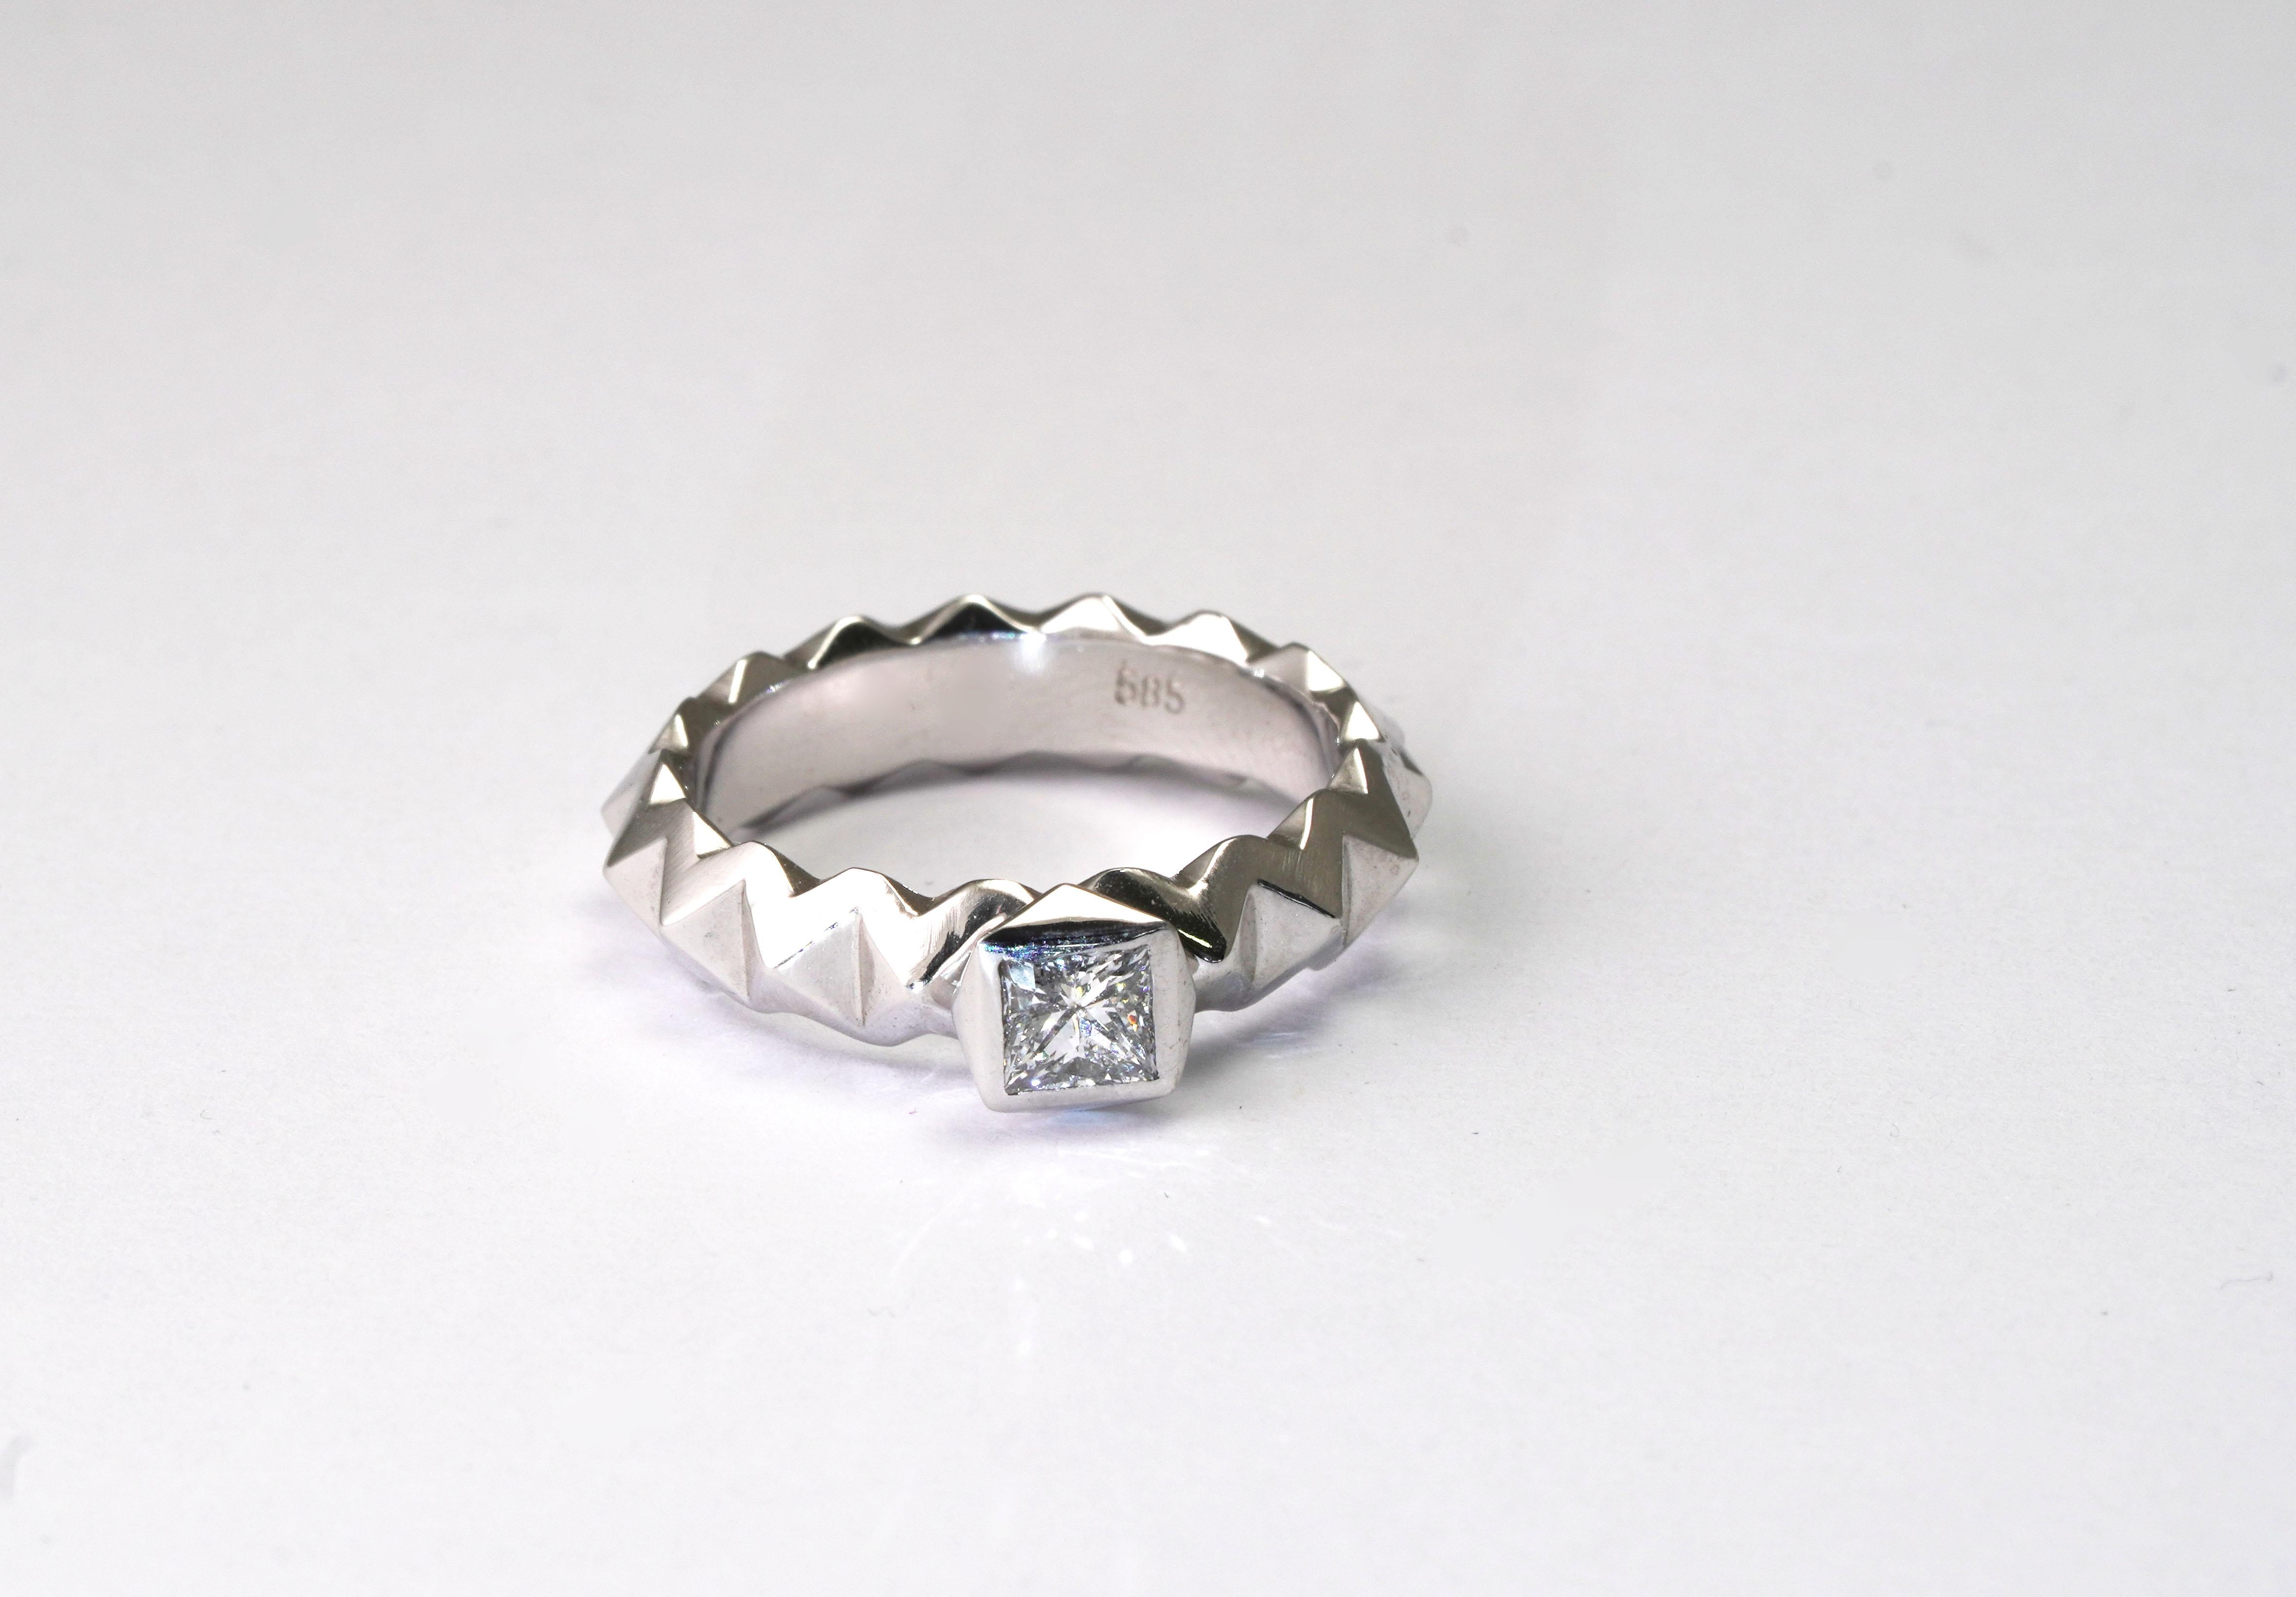 14 kt Gold Ring mit Diamant
Gold Farbe: Weiß
Ringgröße: 5 US
Gesamtgewicht: 4,50 Gramm

Set mit:
- Diamant
Schnitt: Prinzessin
Gewicht: 0,30 Karat